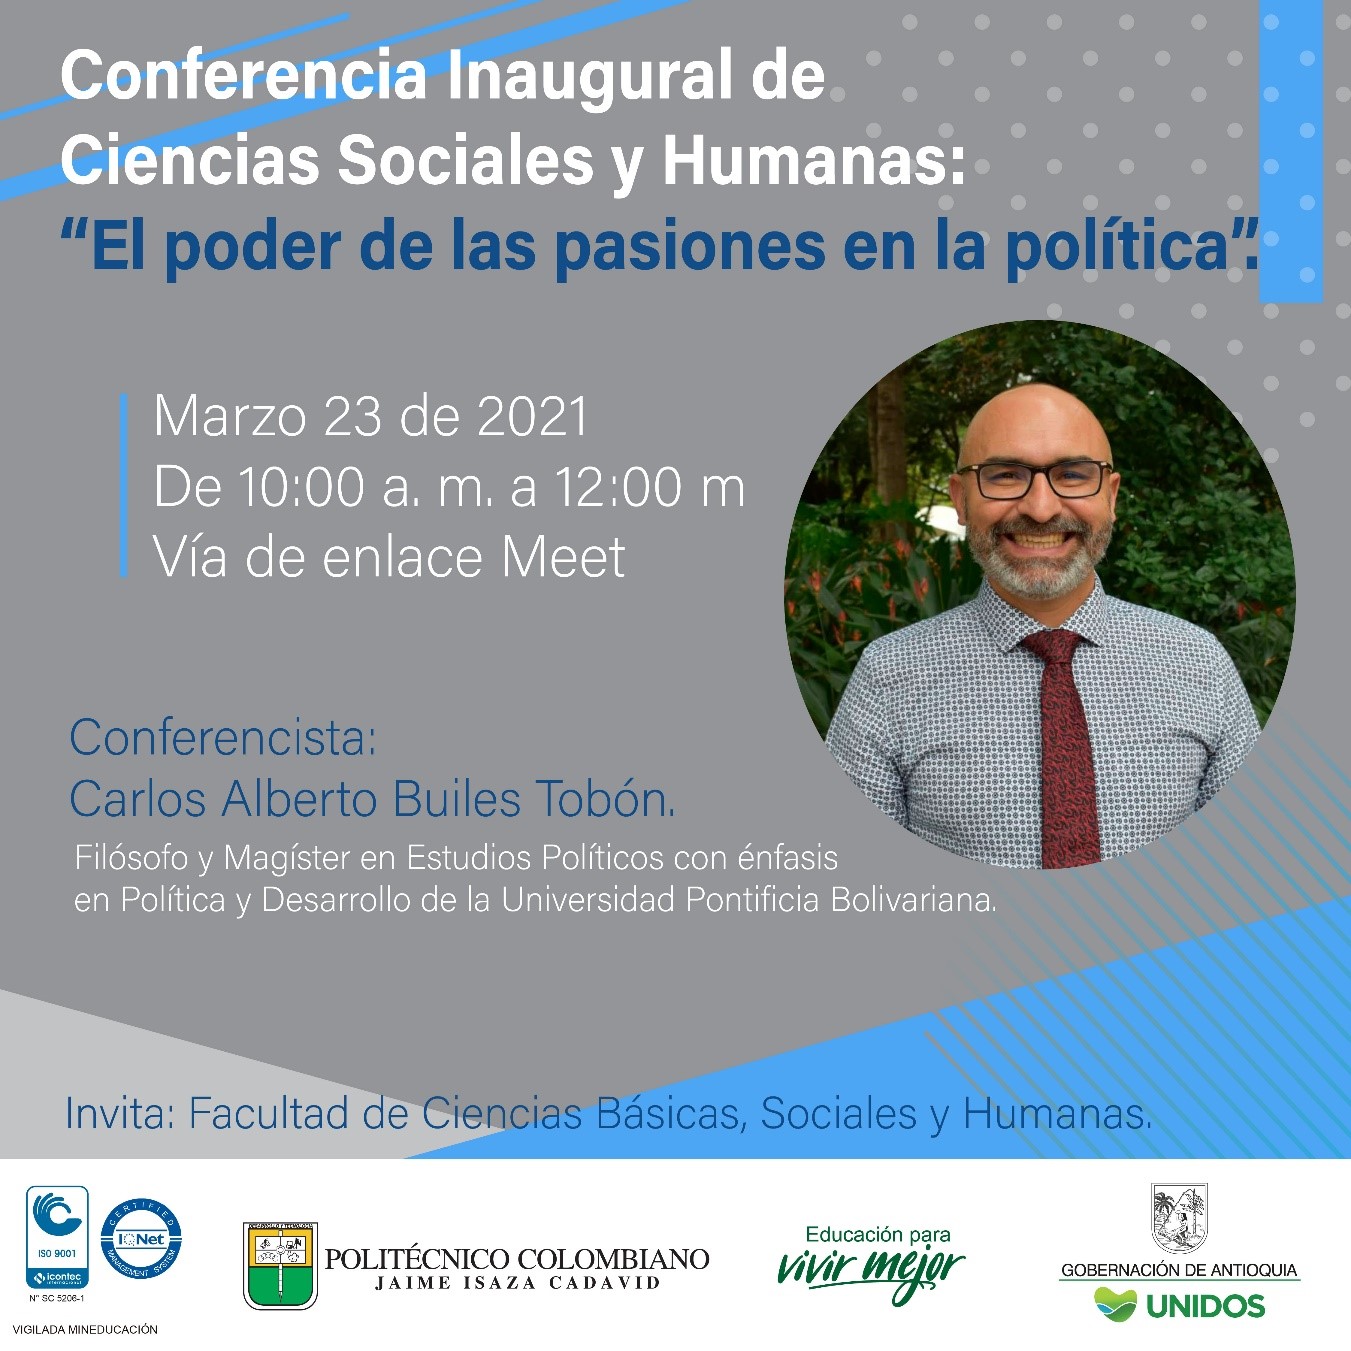 El poder de las pasiones en la política, conferencia Inaugural de Ciencias Sociales y Humanas